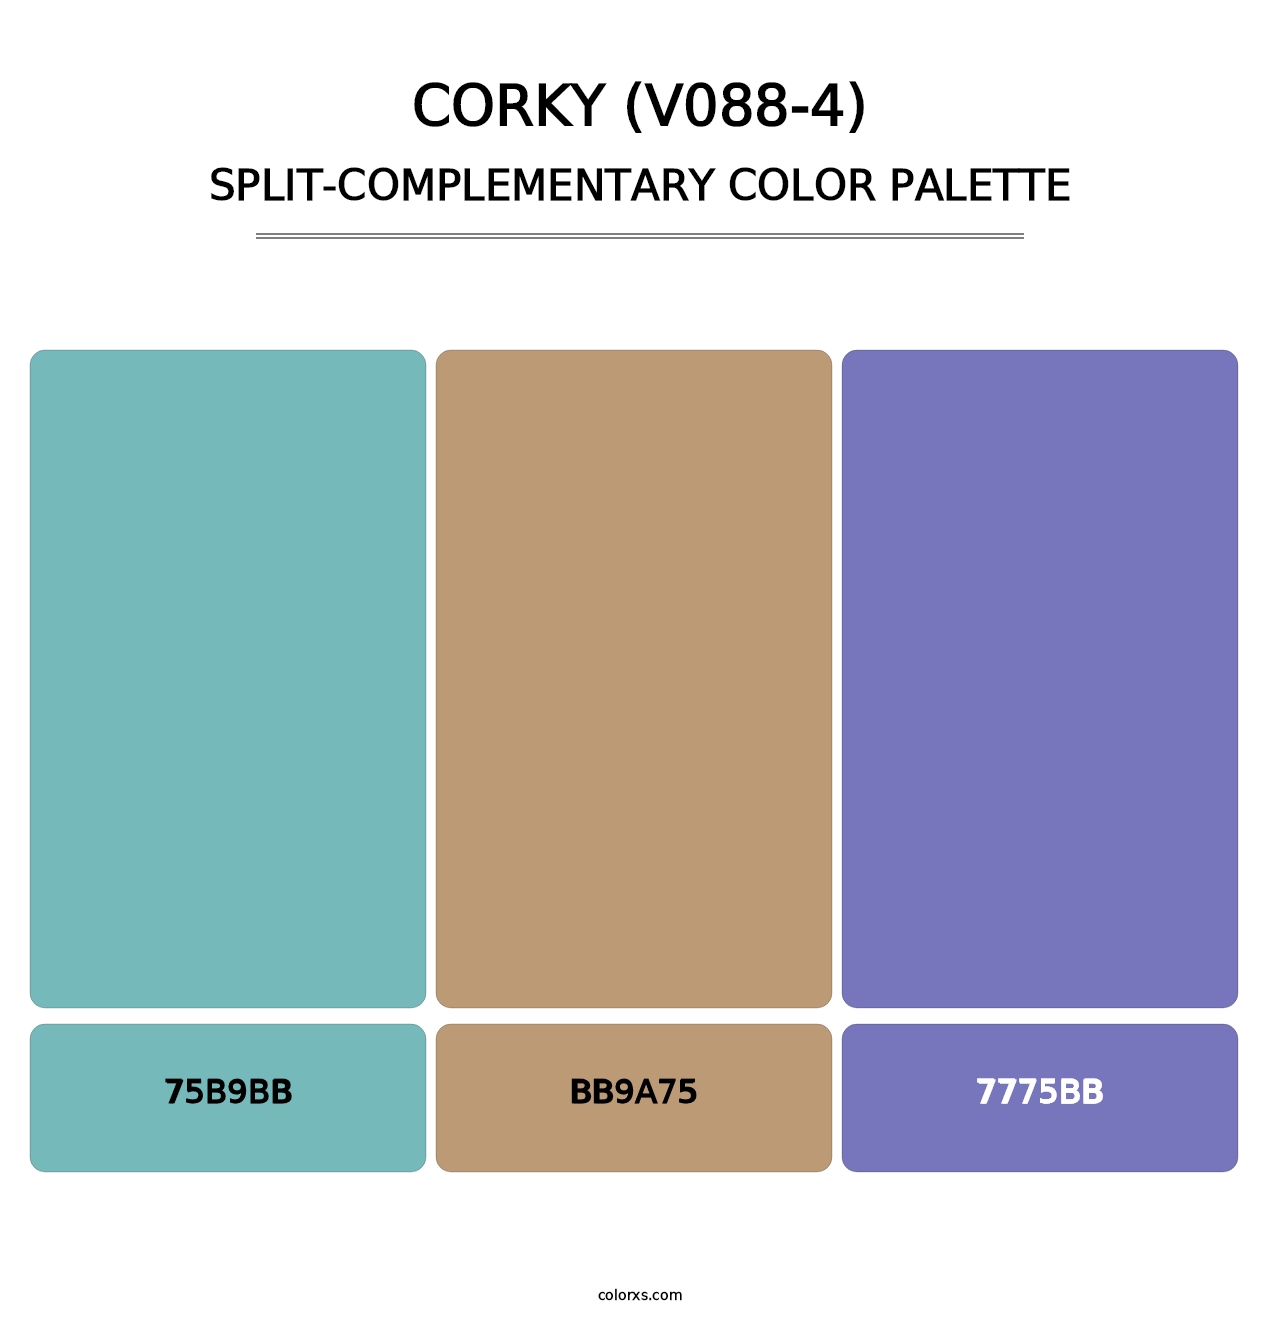 Corky (V088-4) - Split-Complementary Color Palette